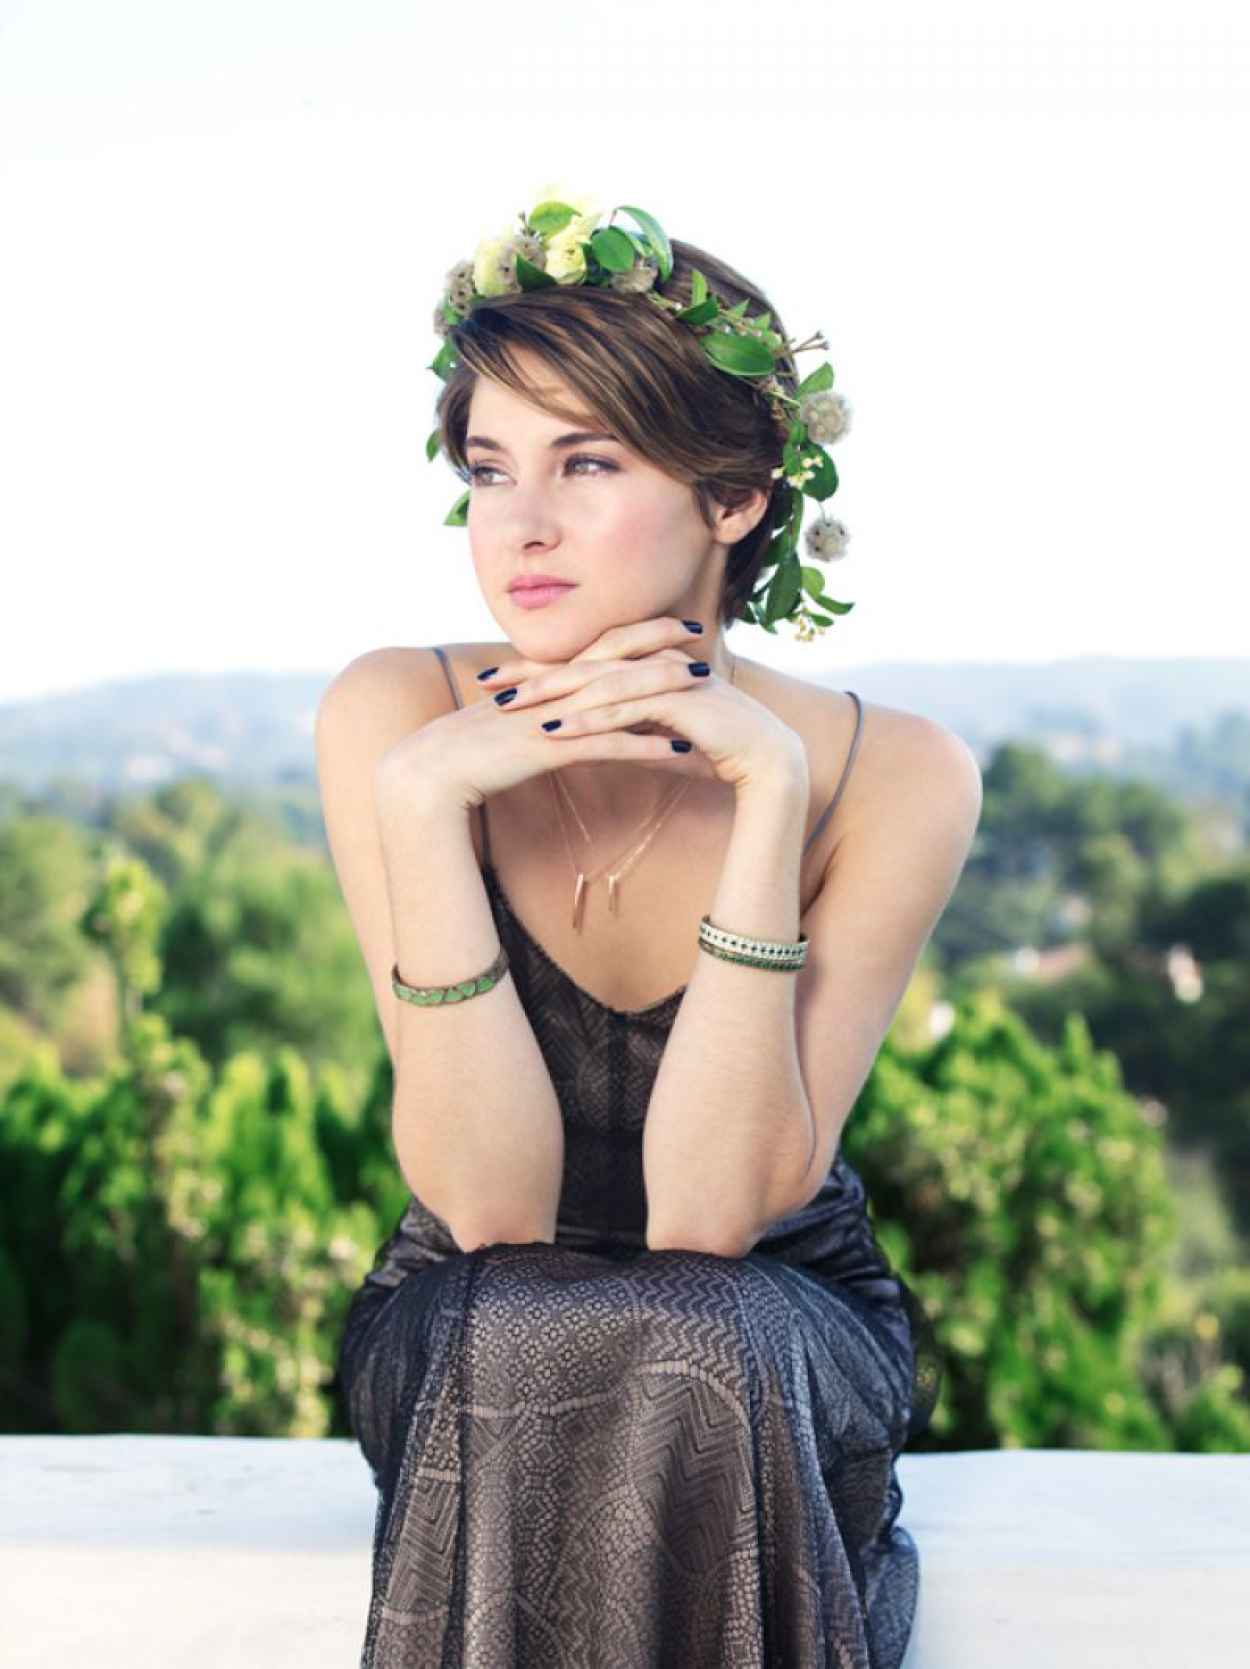 Shailene Woodley Photoshoot for BUST Magazine (2014)-1